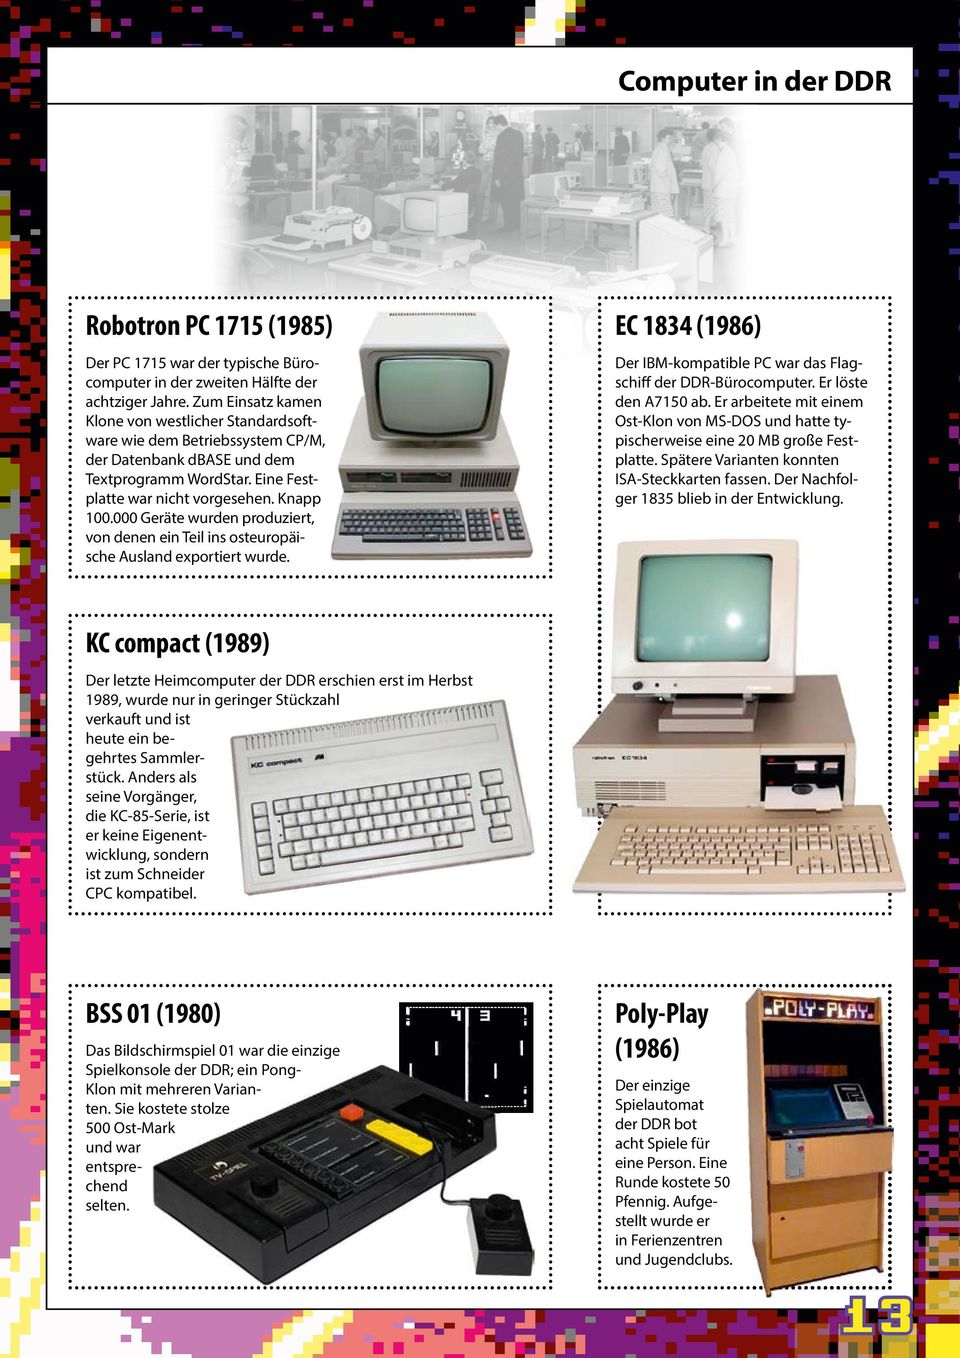 000 Geräte wurden produziert, von denen ein Teil ins osteuropäische Ausland exportiert wurde. EC 1834 (1986) Der IBM-kompatible PC war das Flagschiff der DDR-Bürocomputer. Er löste den A7150 ab.